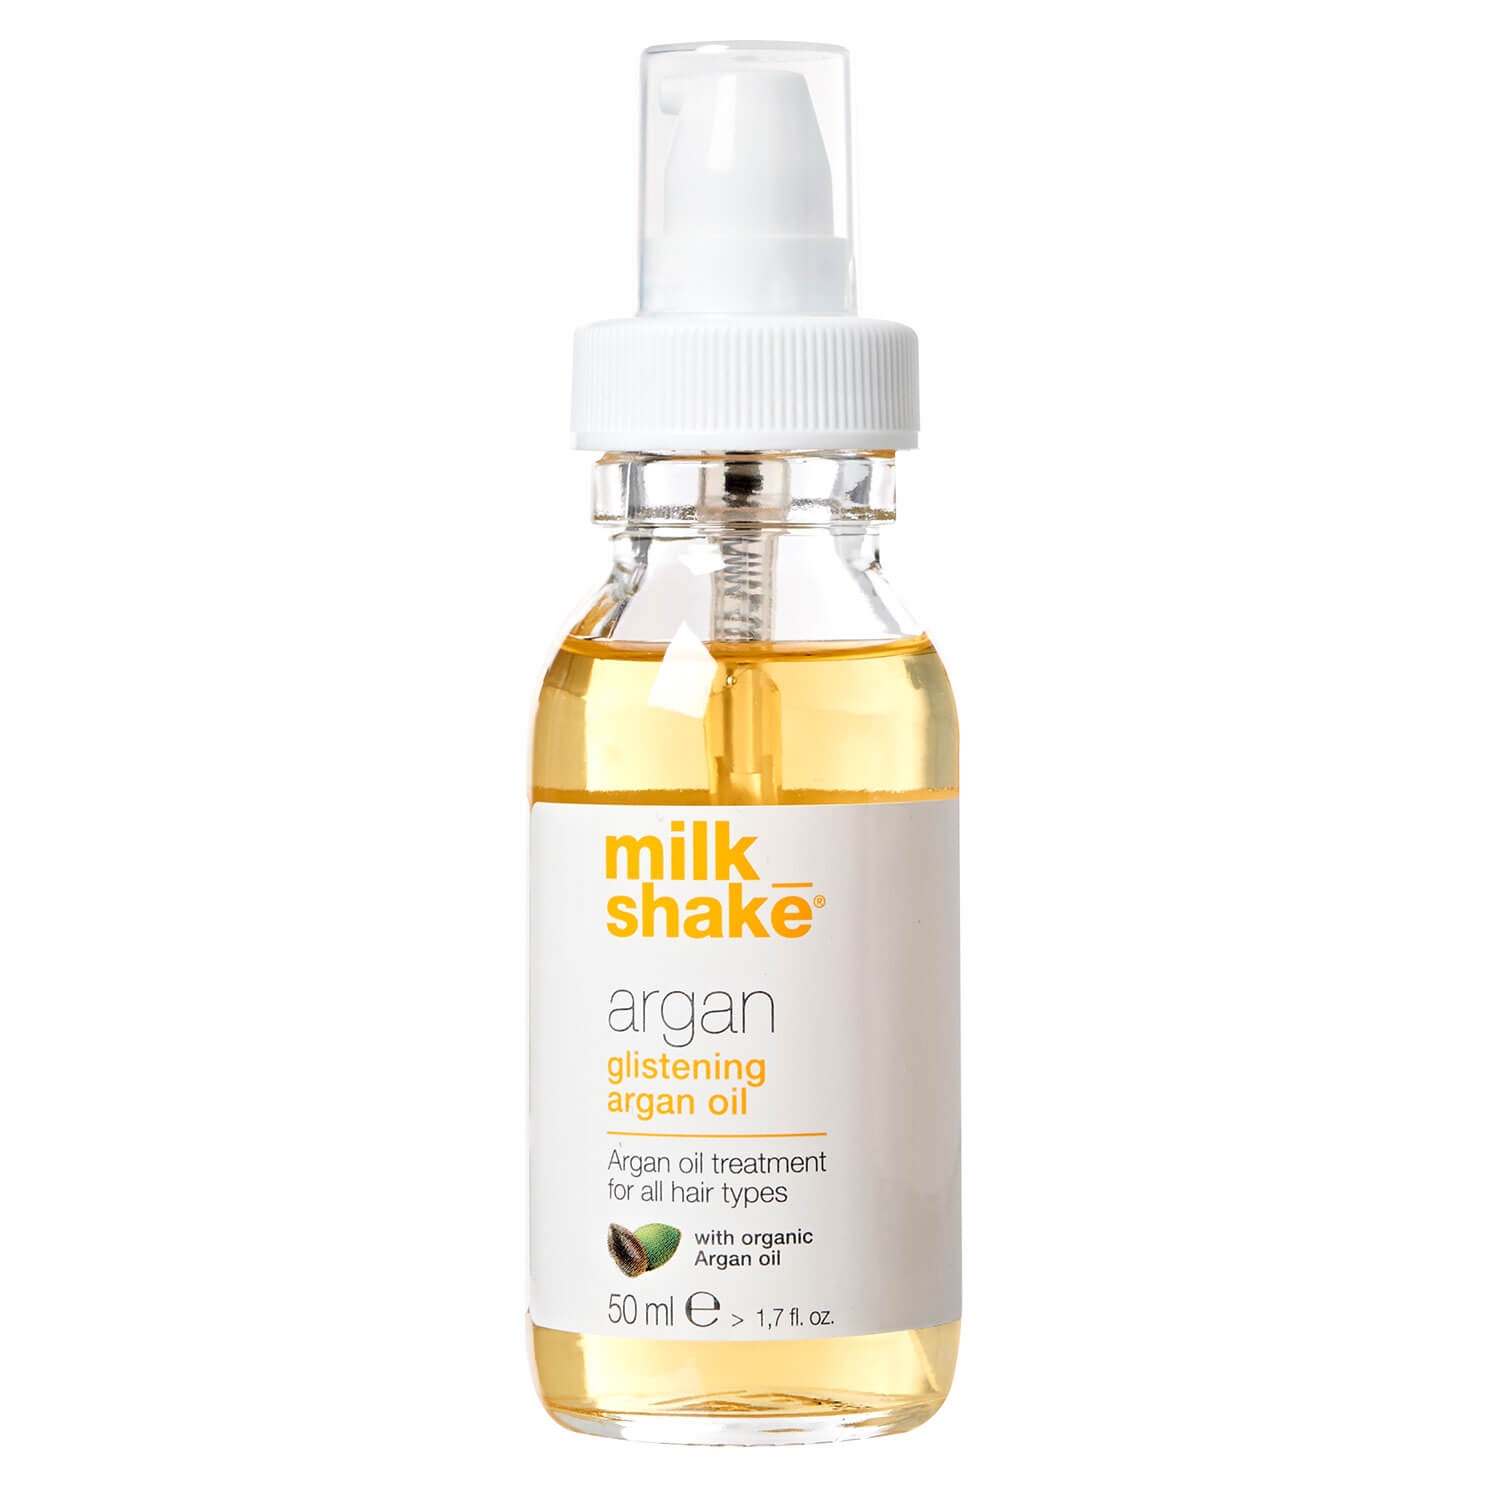 Produktbild von milk_shake argan - glistening argan oil